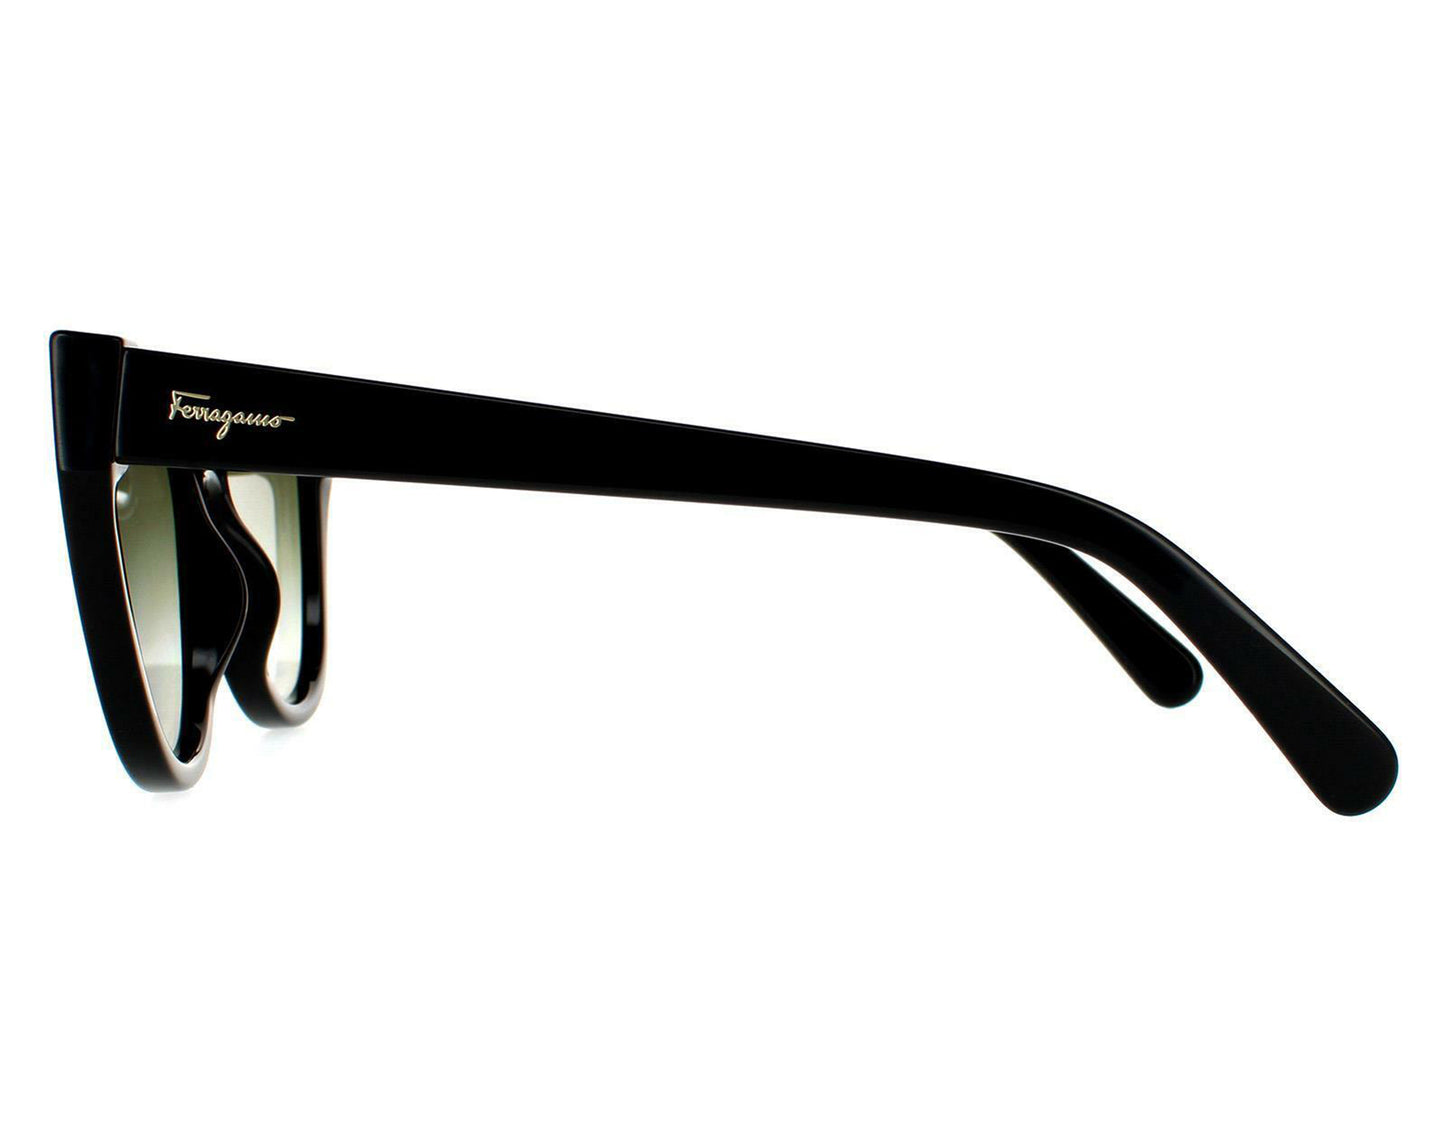 Salvatore Ferragamo SF997S-001-63 63mm New Sunglasses